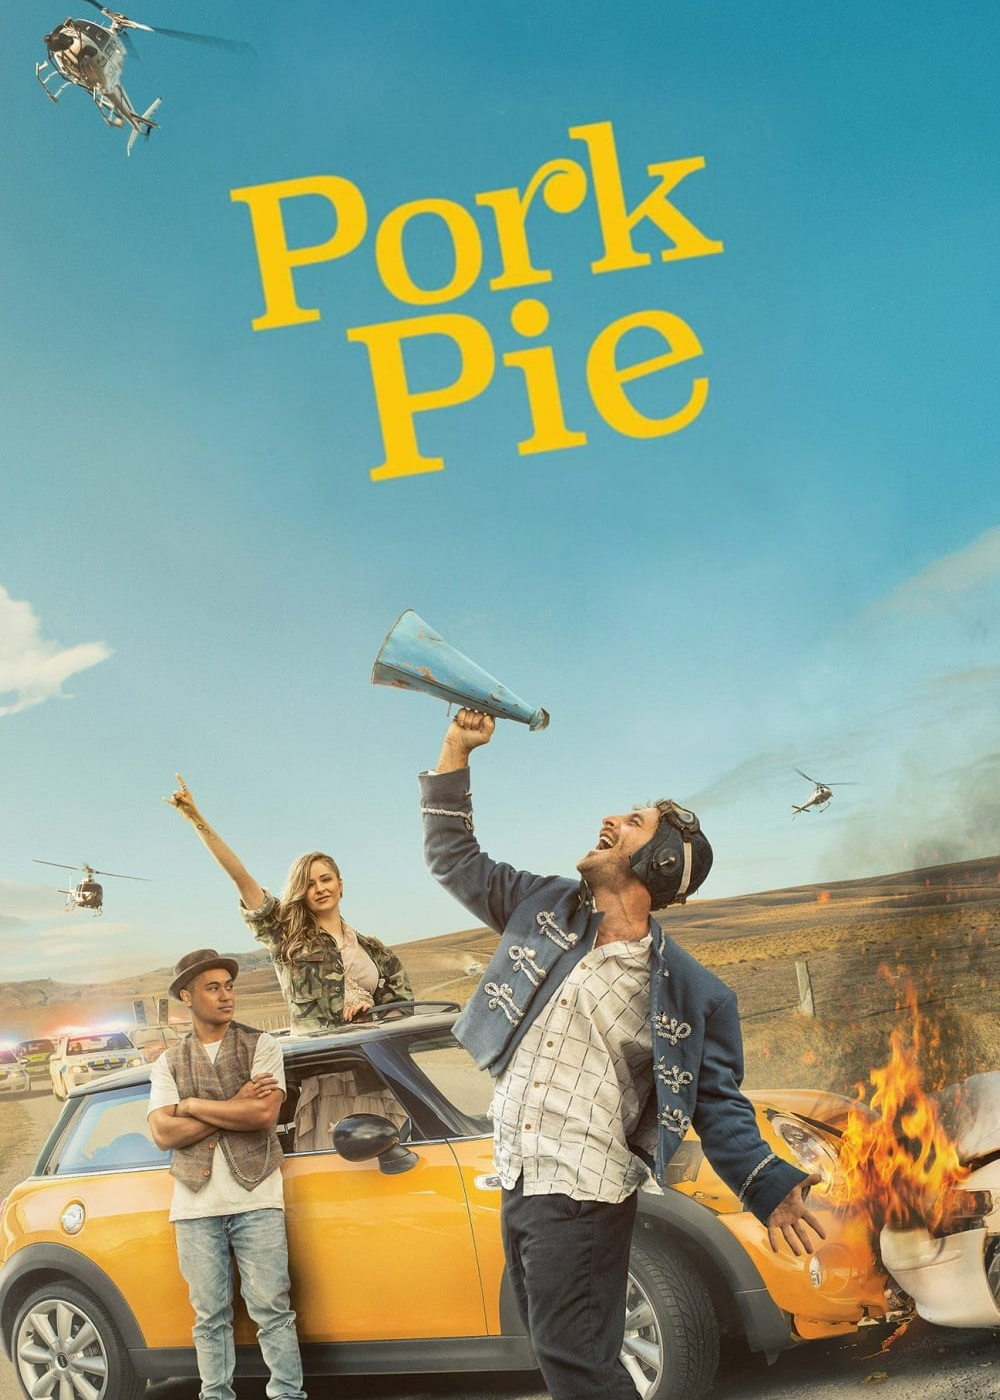 Poster Phim Pork Pie (Pork Pie)